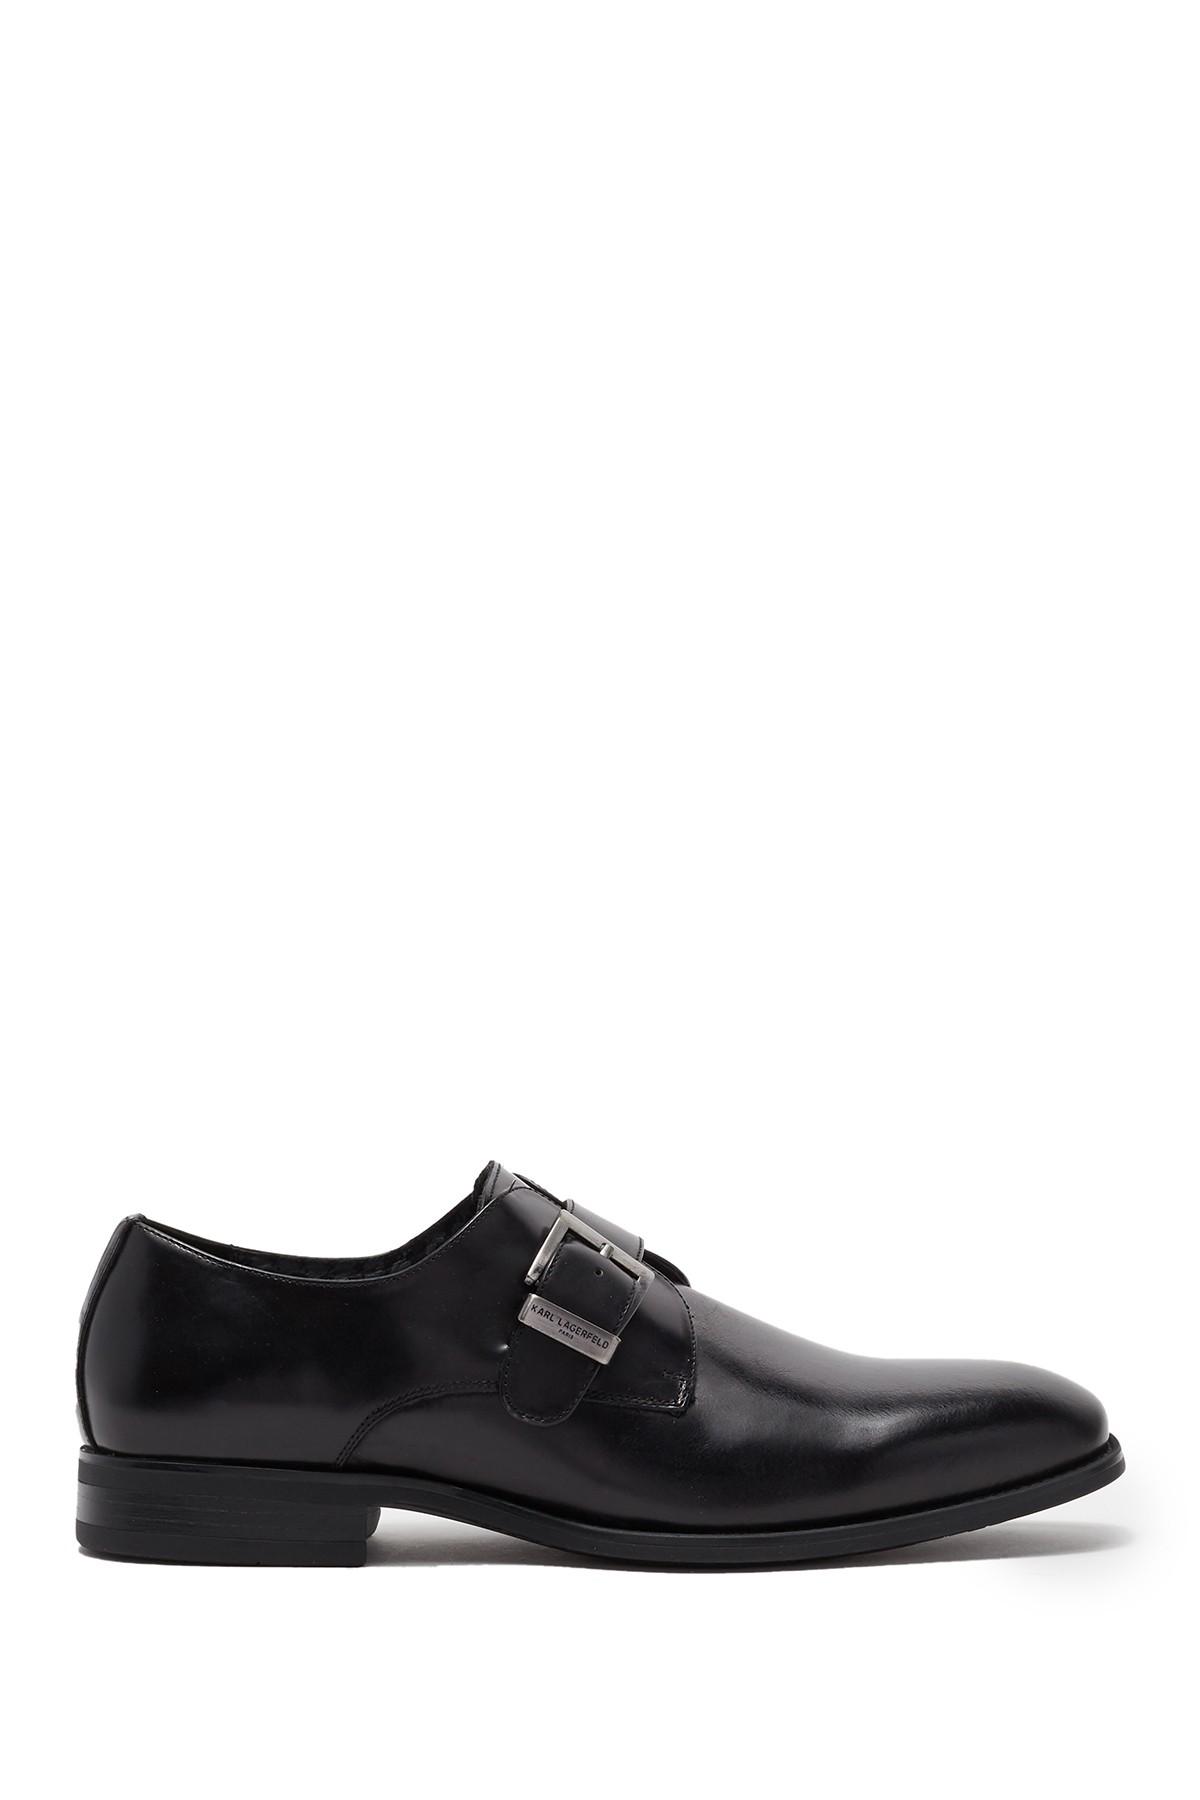 Karl Lagerfeld Monk-strap Leather Dress Shoe in Black for Men - Lyst